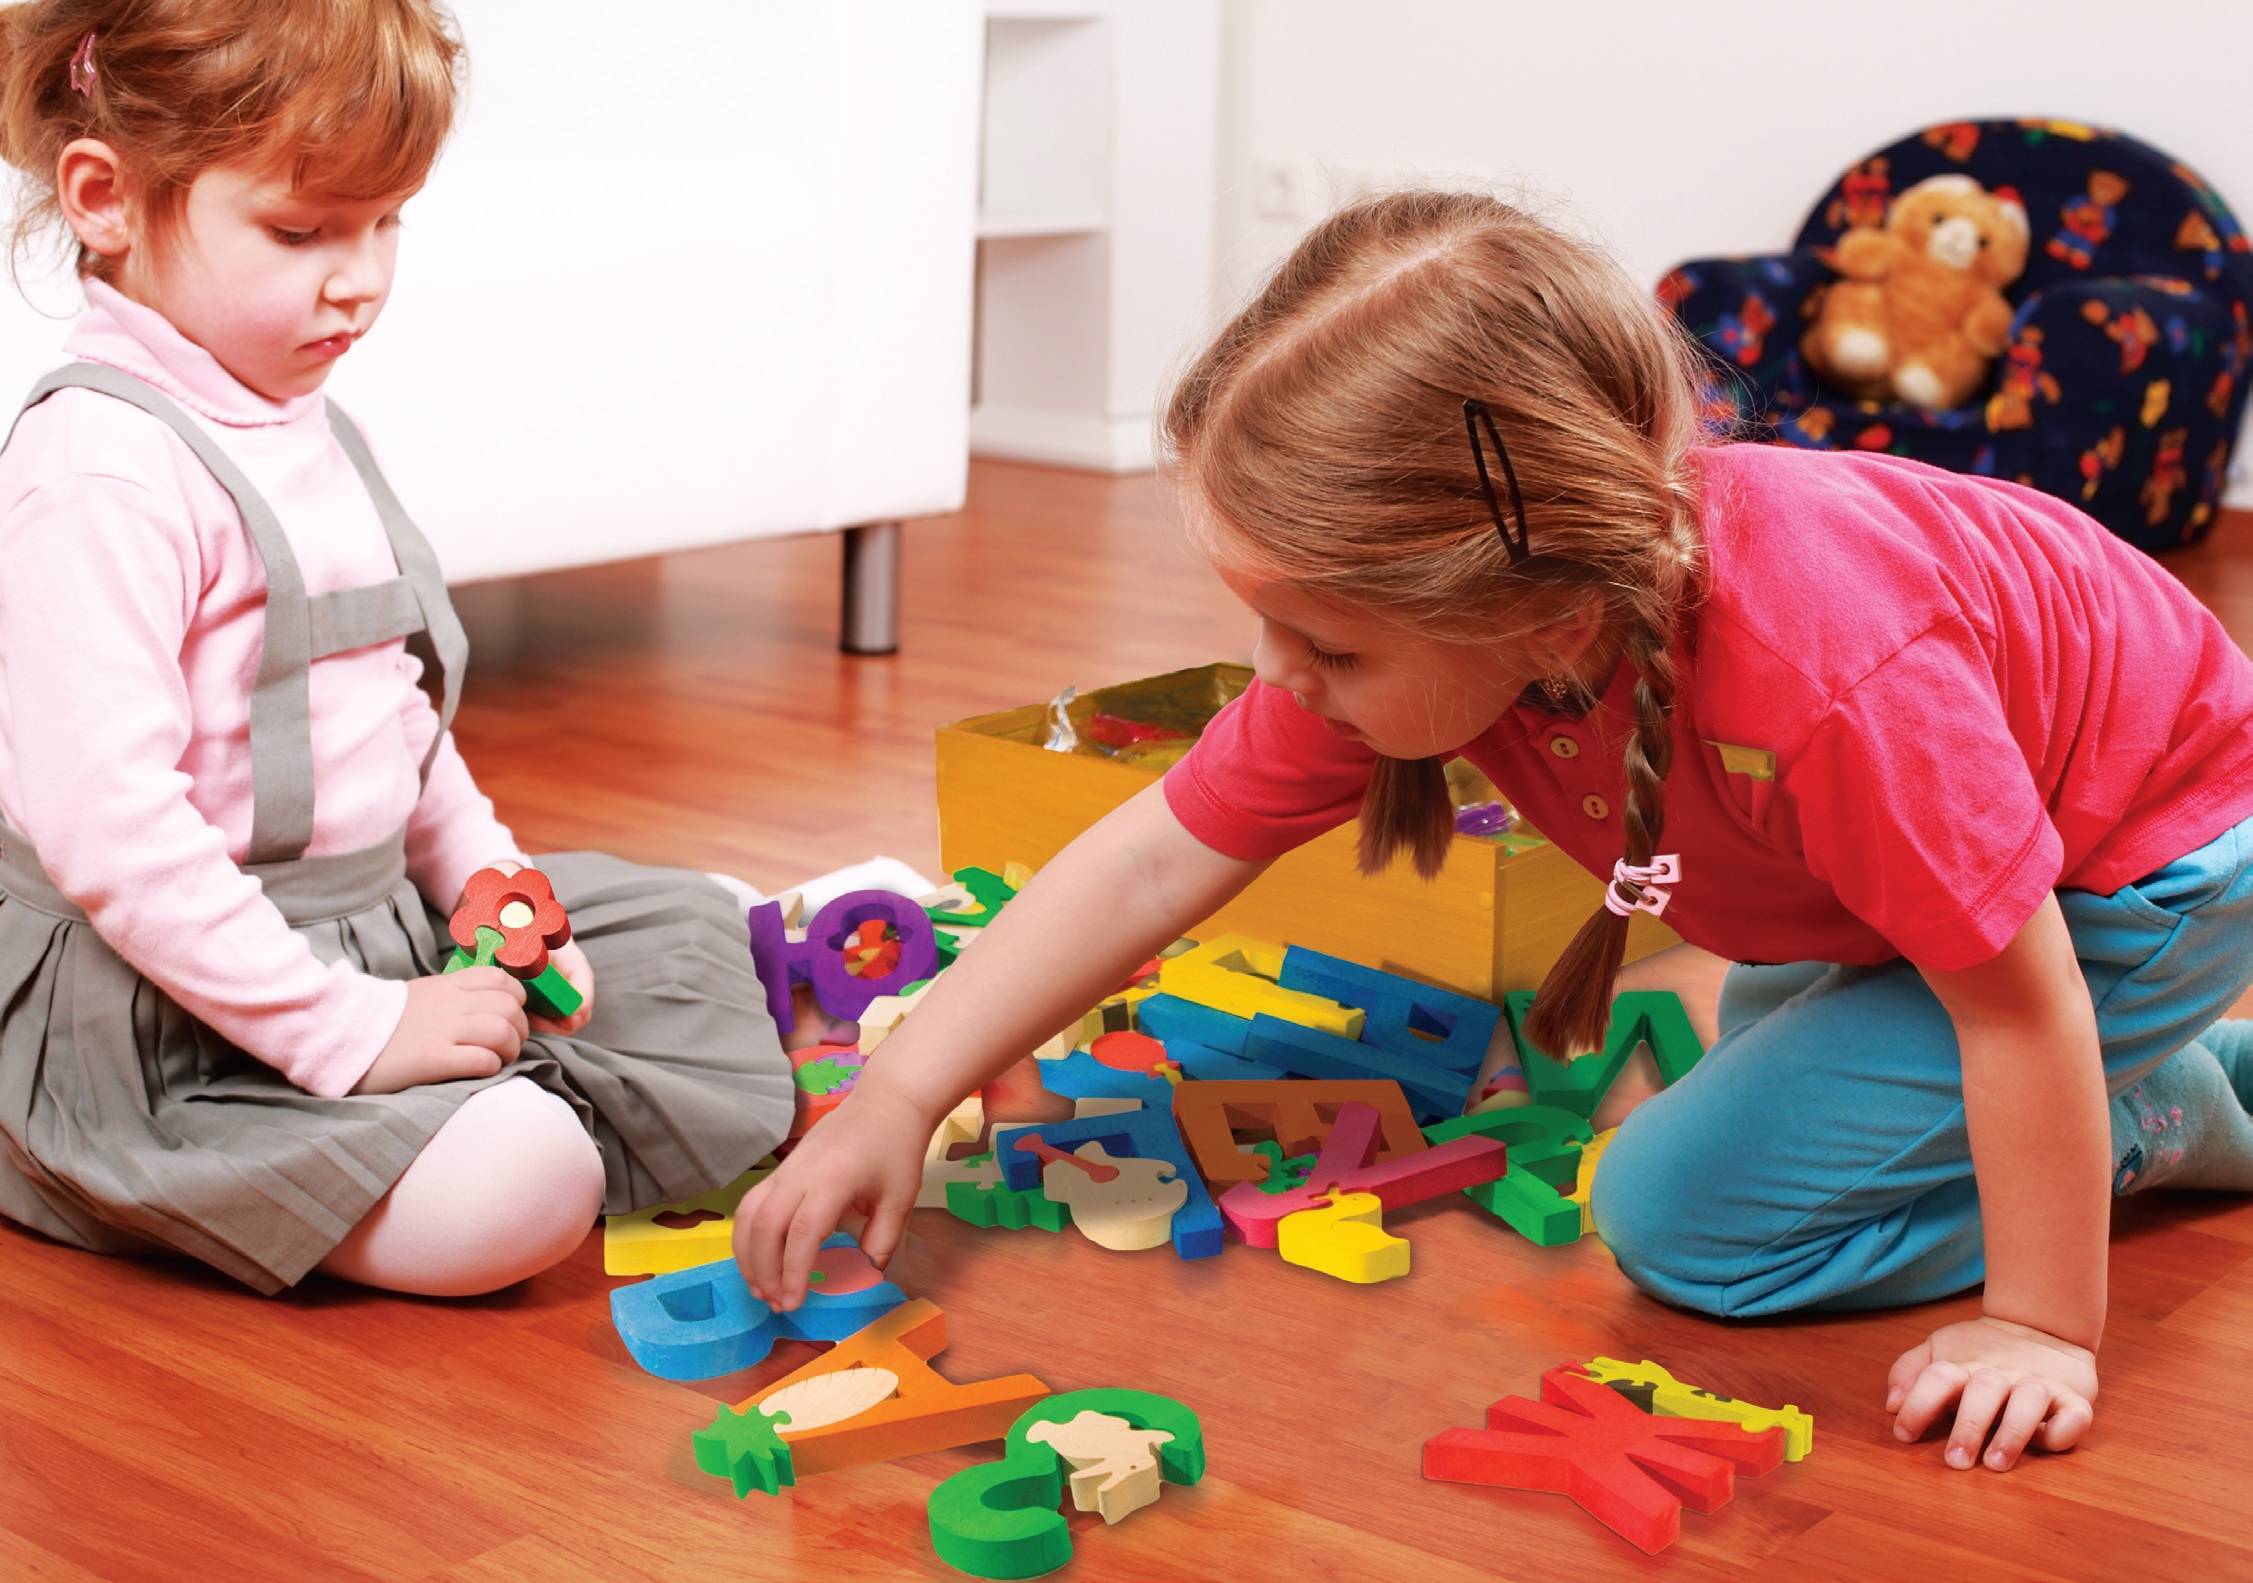 Чем занять детей 7 лет дома: интересные занятия, полезные игры и домашние развлечения